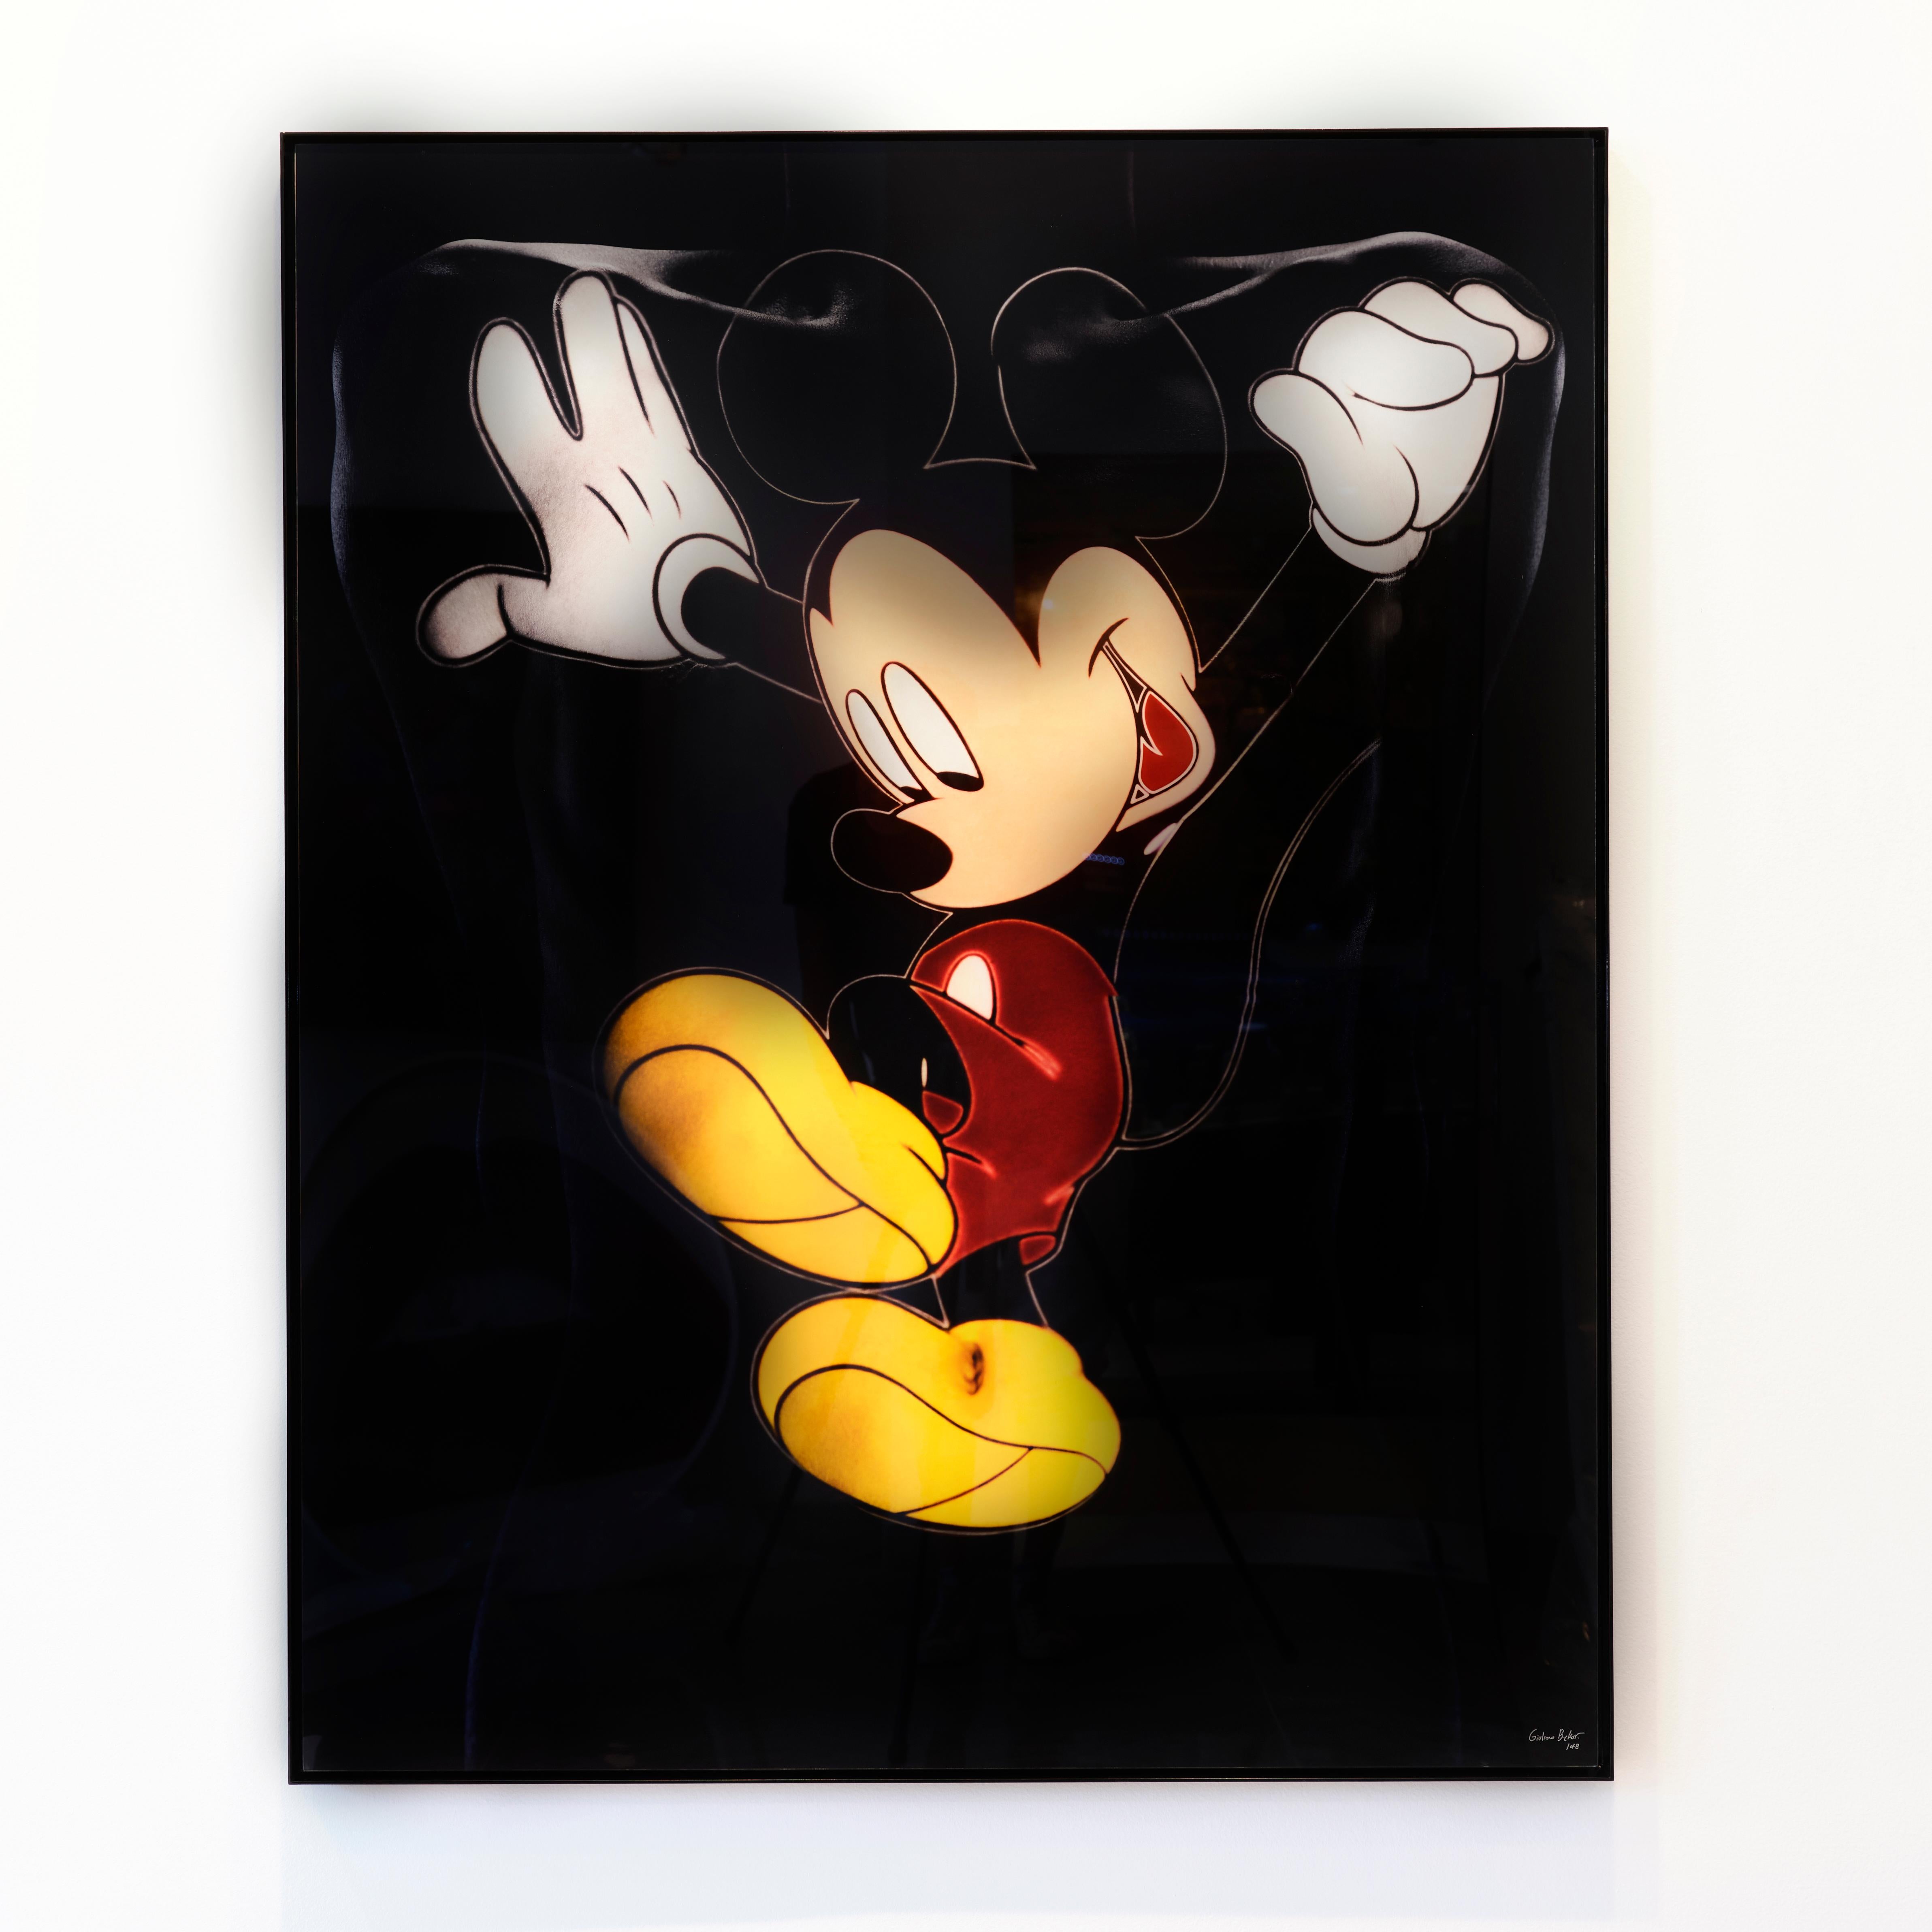 „Minnie/Mickey MM4“ (FRAMED) Fotografie 50" x 40" in Ed. 1/8 von Giuliano Bekor

Dieses Kunstwerk wurde auf einem hochauflösenden Fujiflex Crystal Archive Silberhalogenidpapier gedruckt. Bedruckt mit einer Hochglanzoberfläche. Montiert auf einer